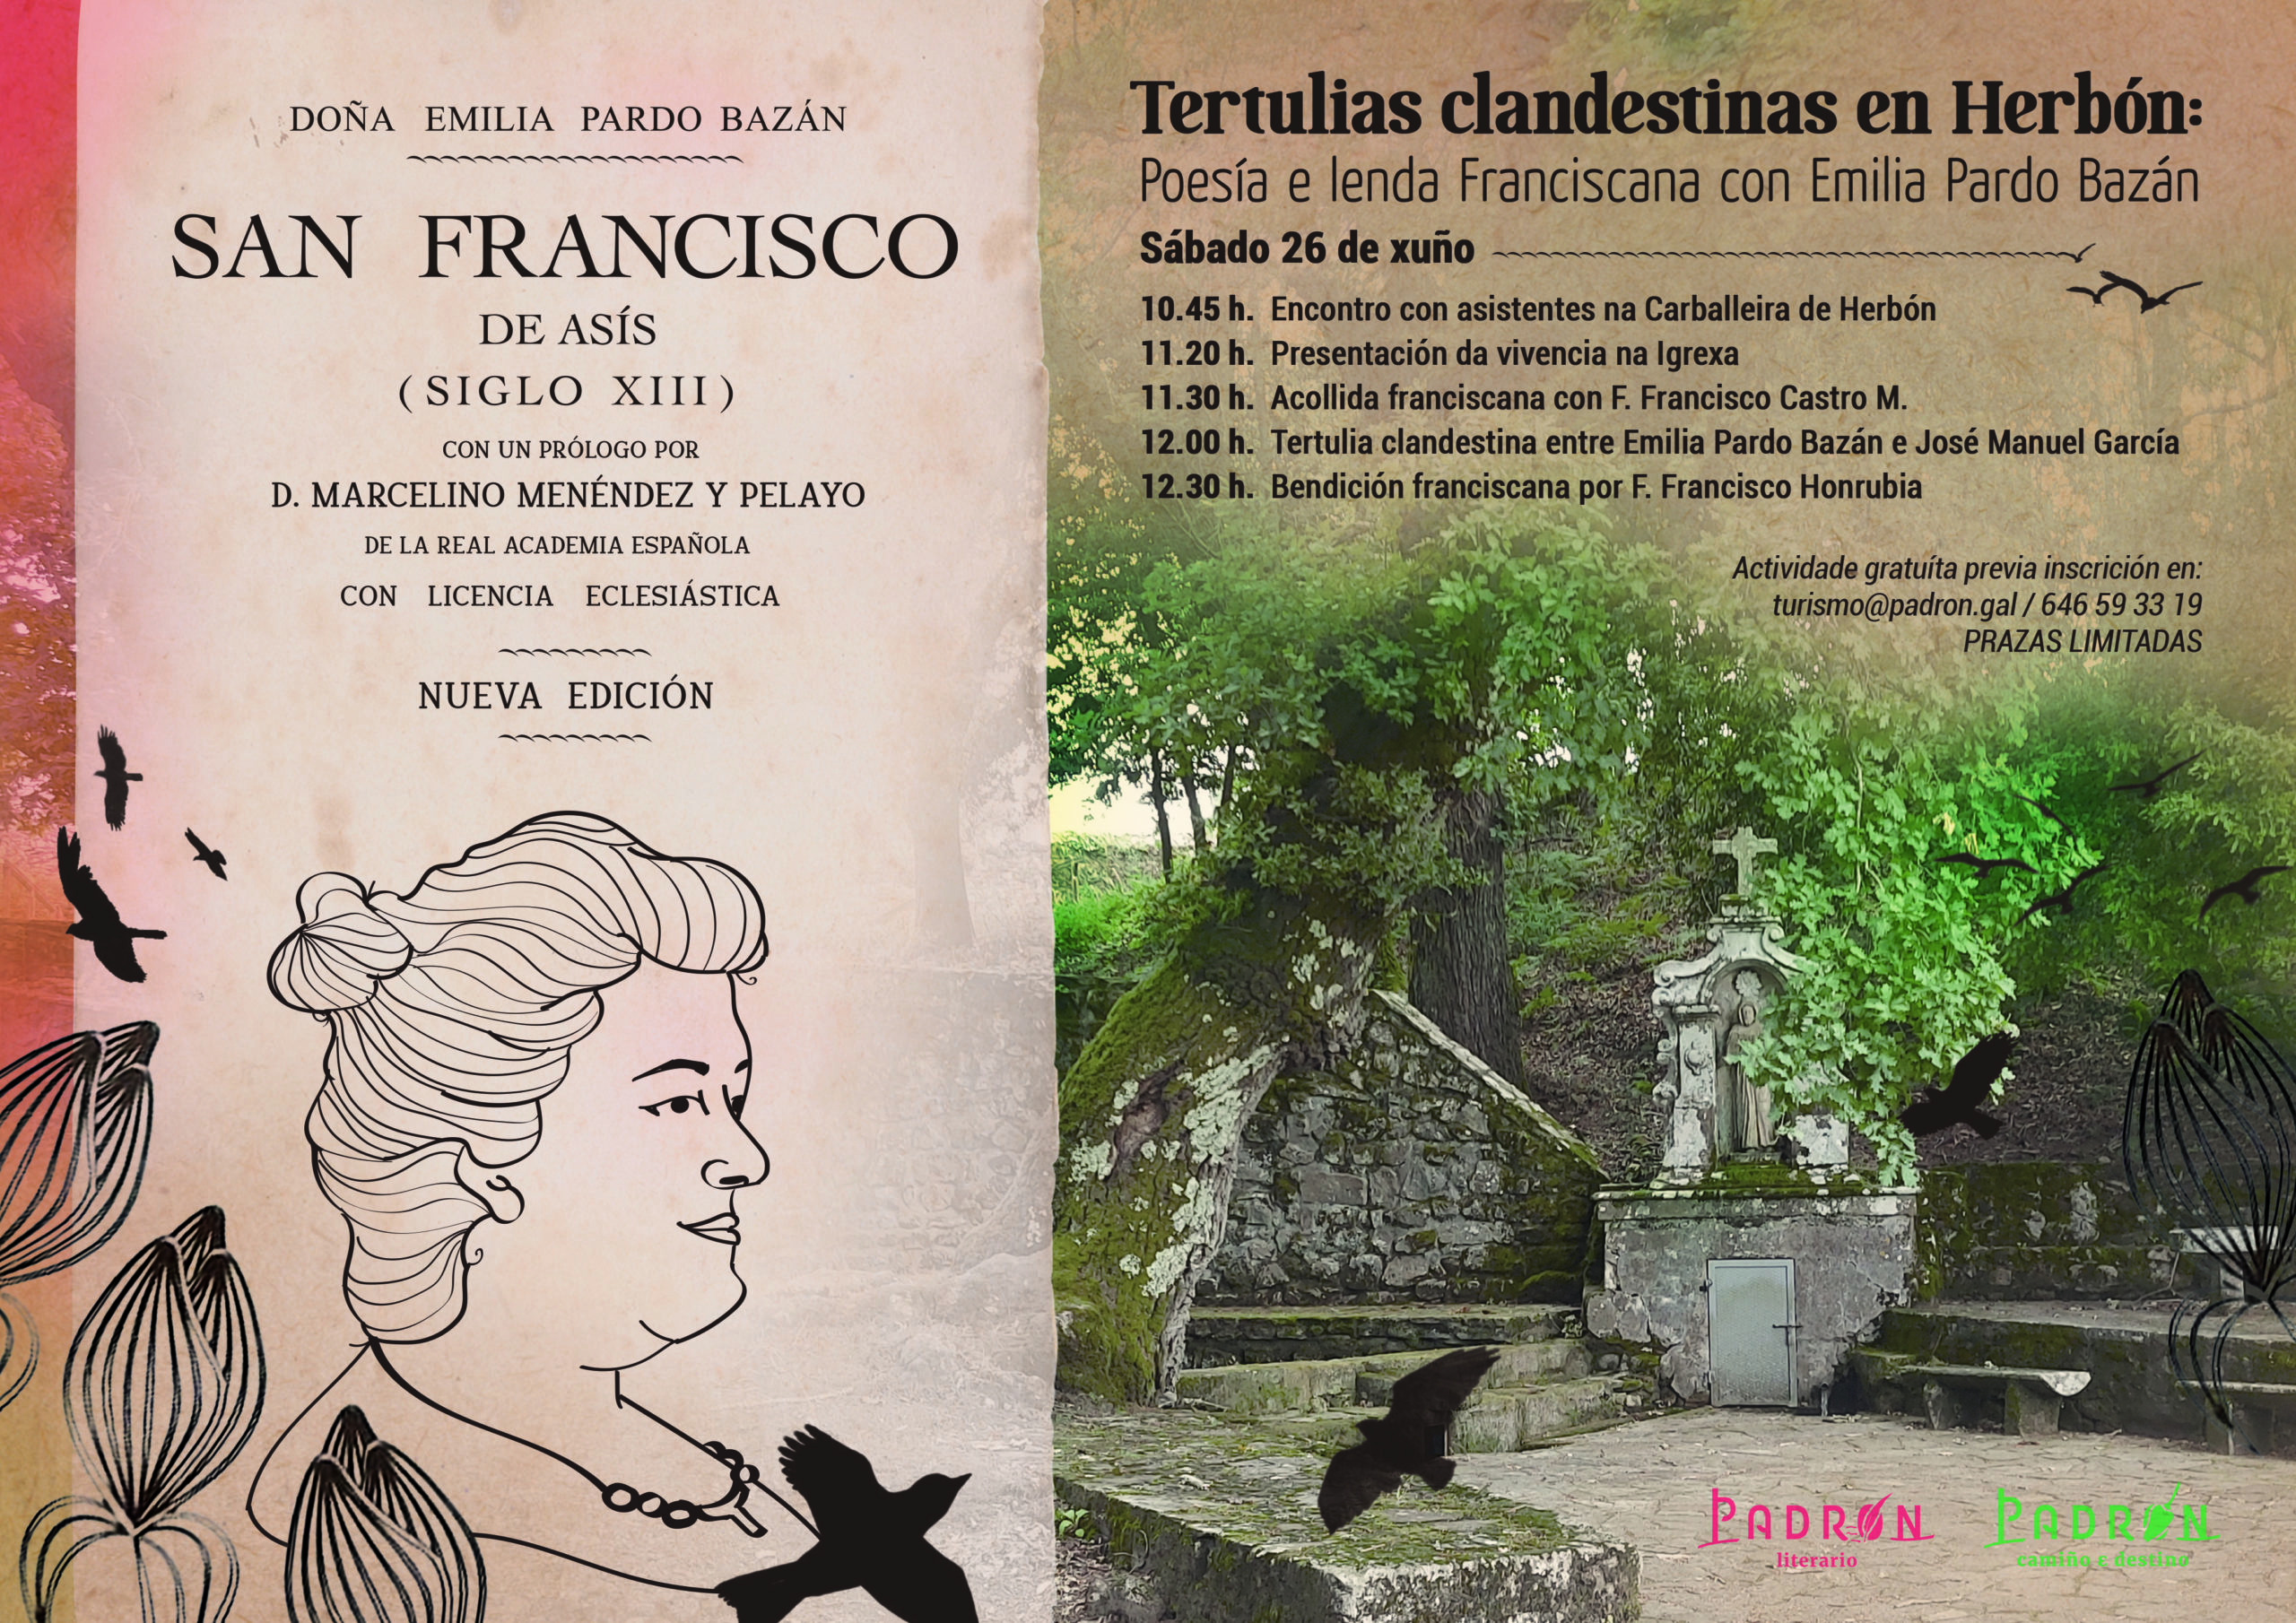 Tertulias clandestinas en Herbón: Poesía e lenda Franciscana con Emilia Pardo Bazán en Padrón